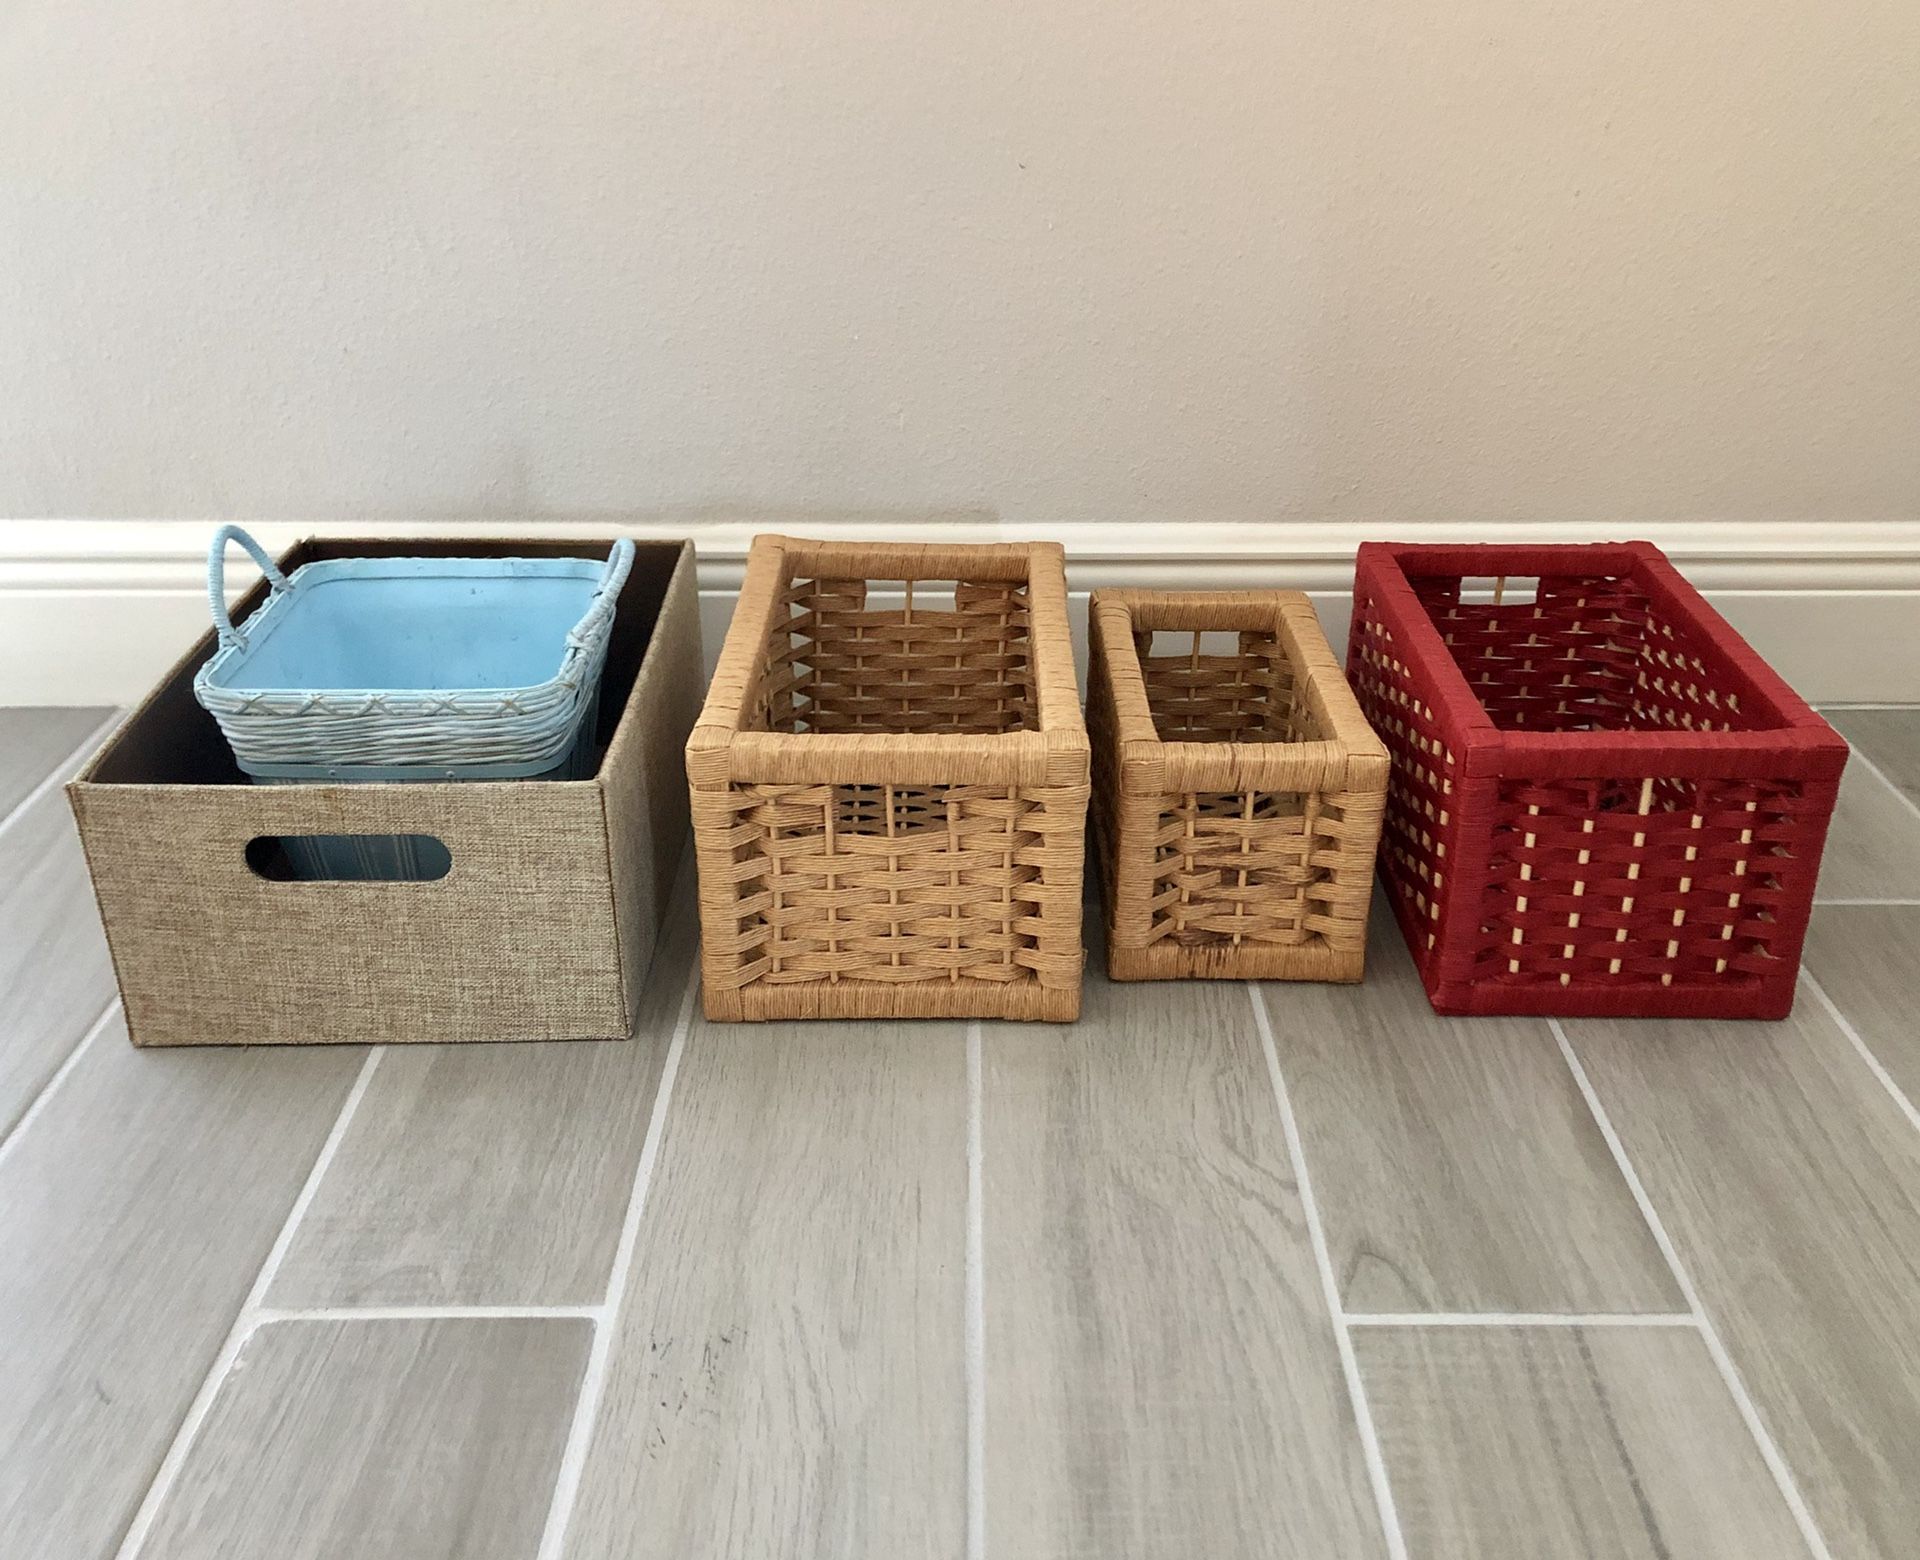 5 Storage Baskets/ Bins